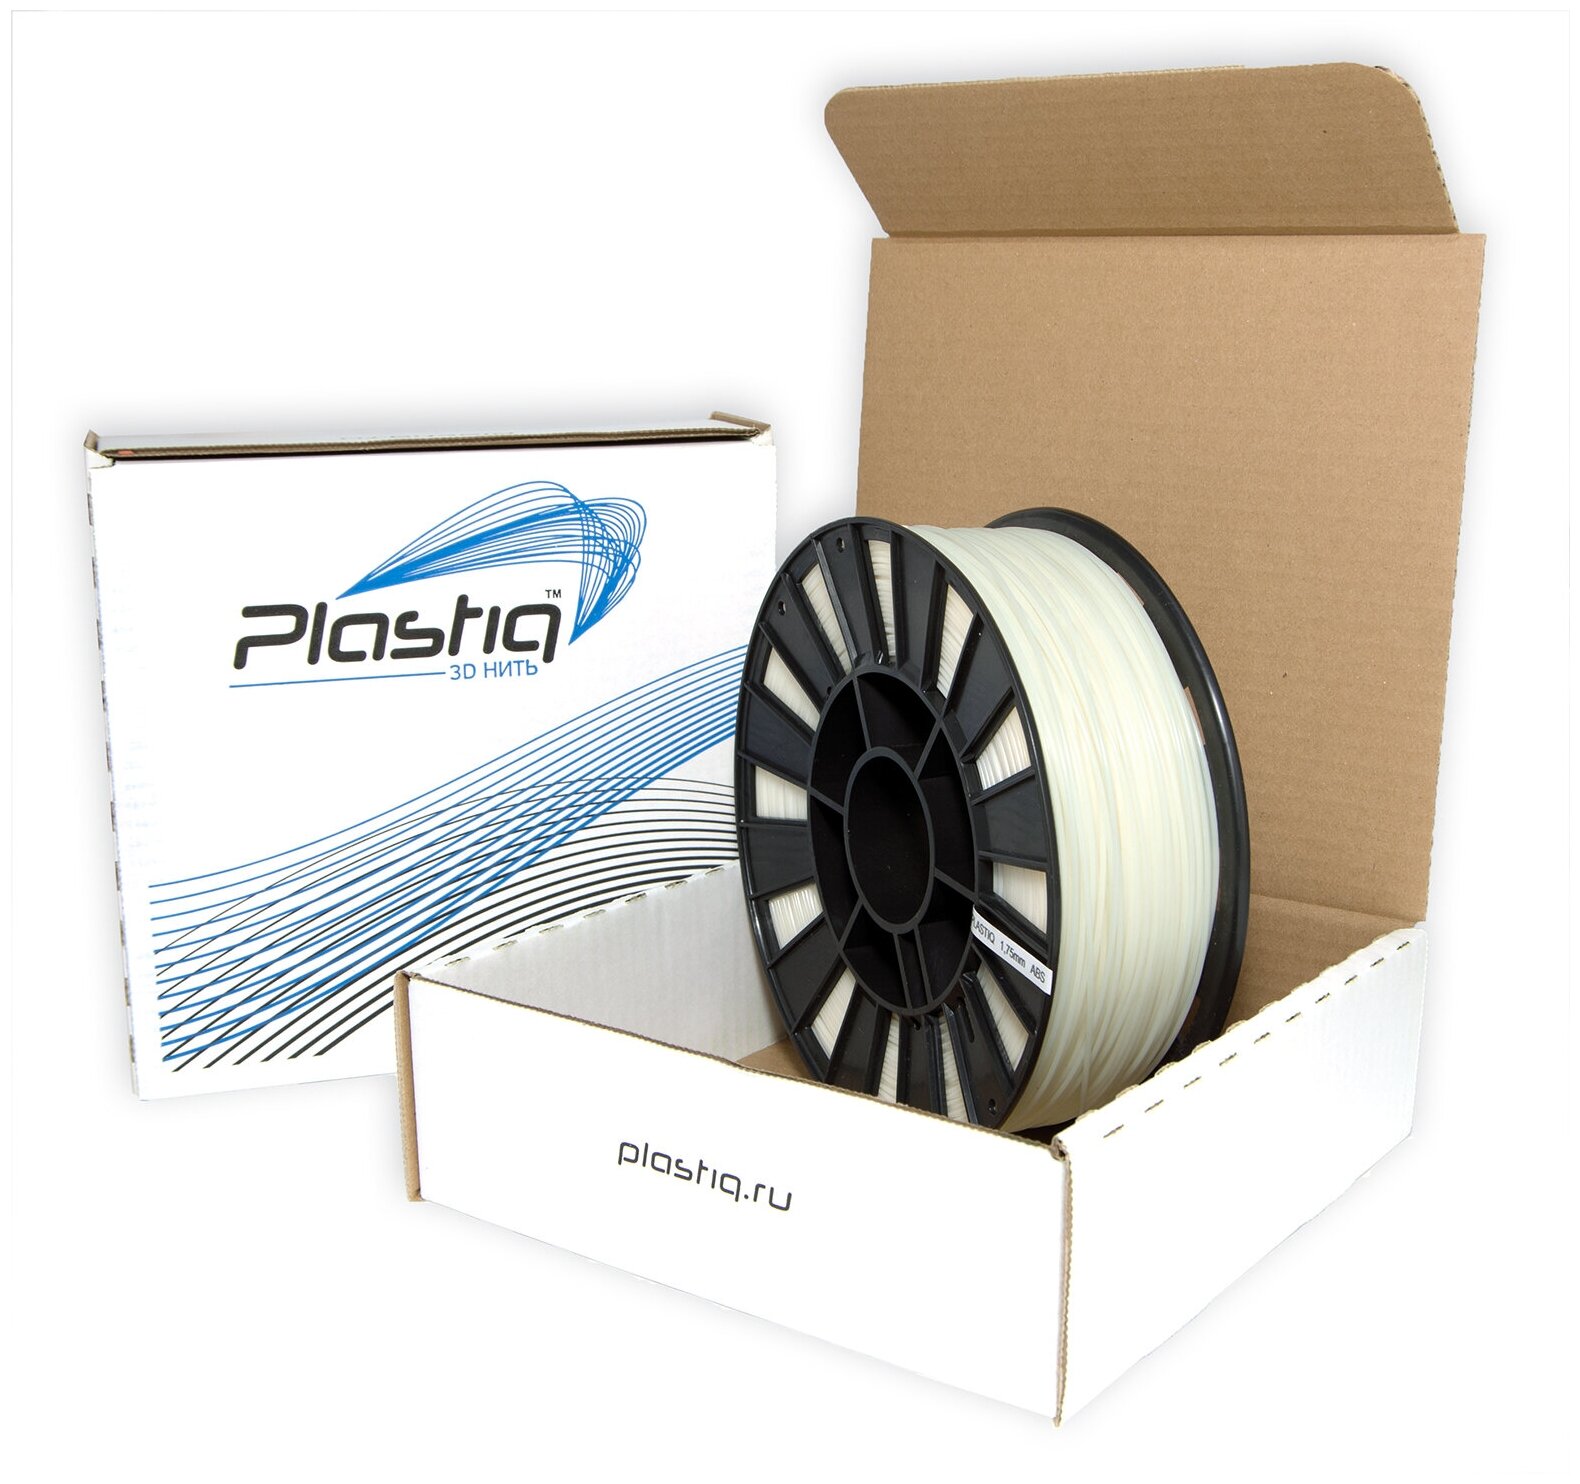 Пластик ABS для 3D принтера натуральный Plastiq, 1.75мм, 300 метров